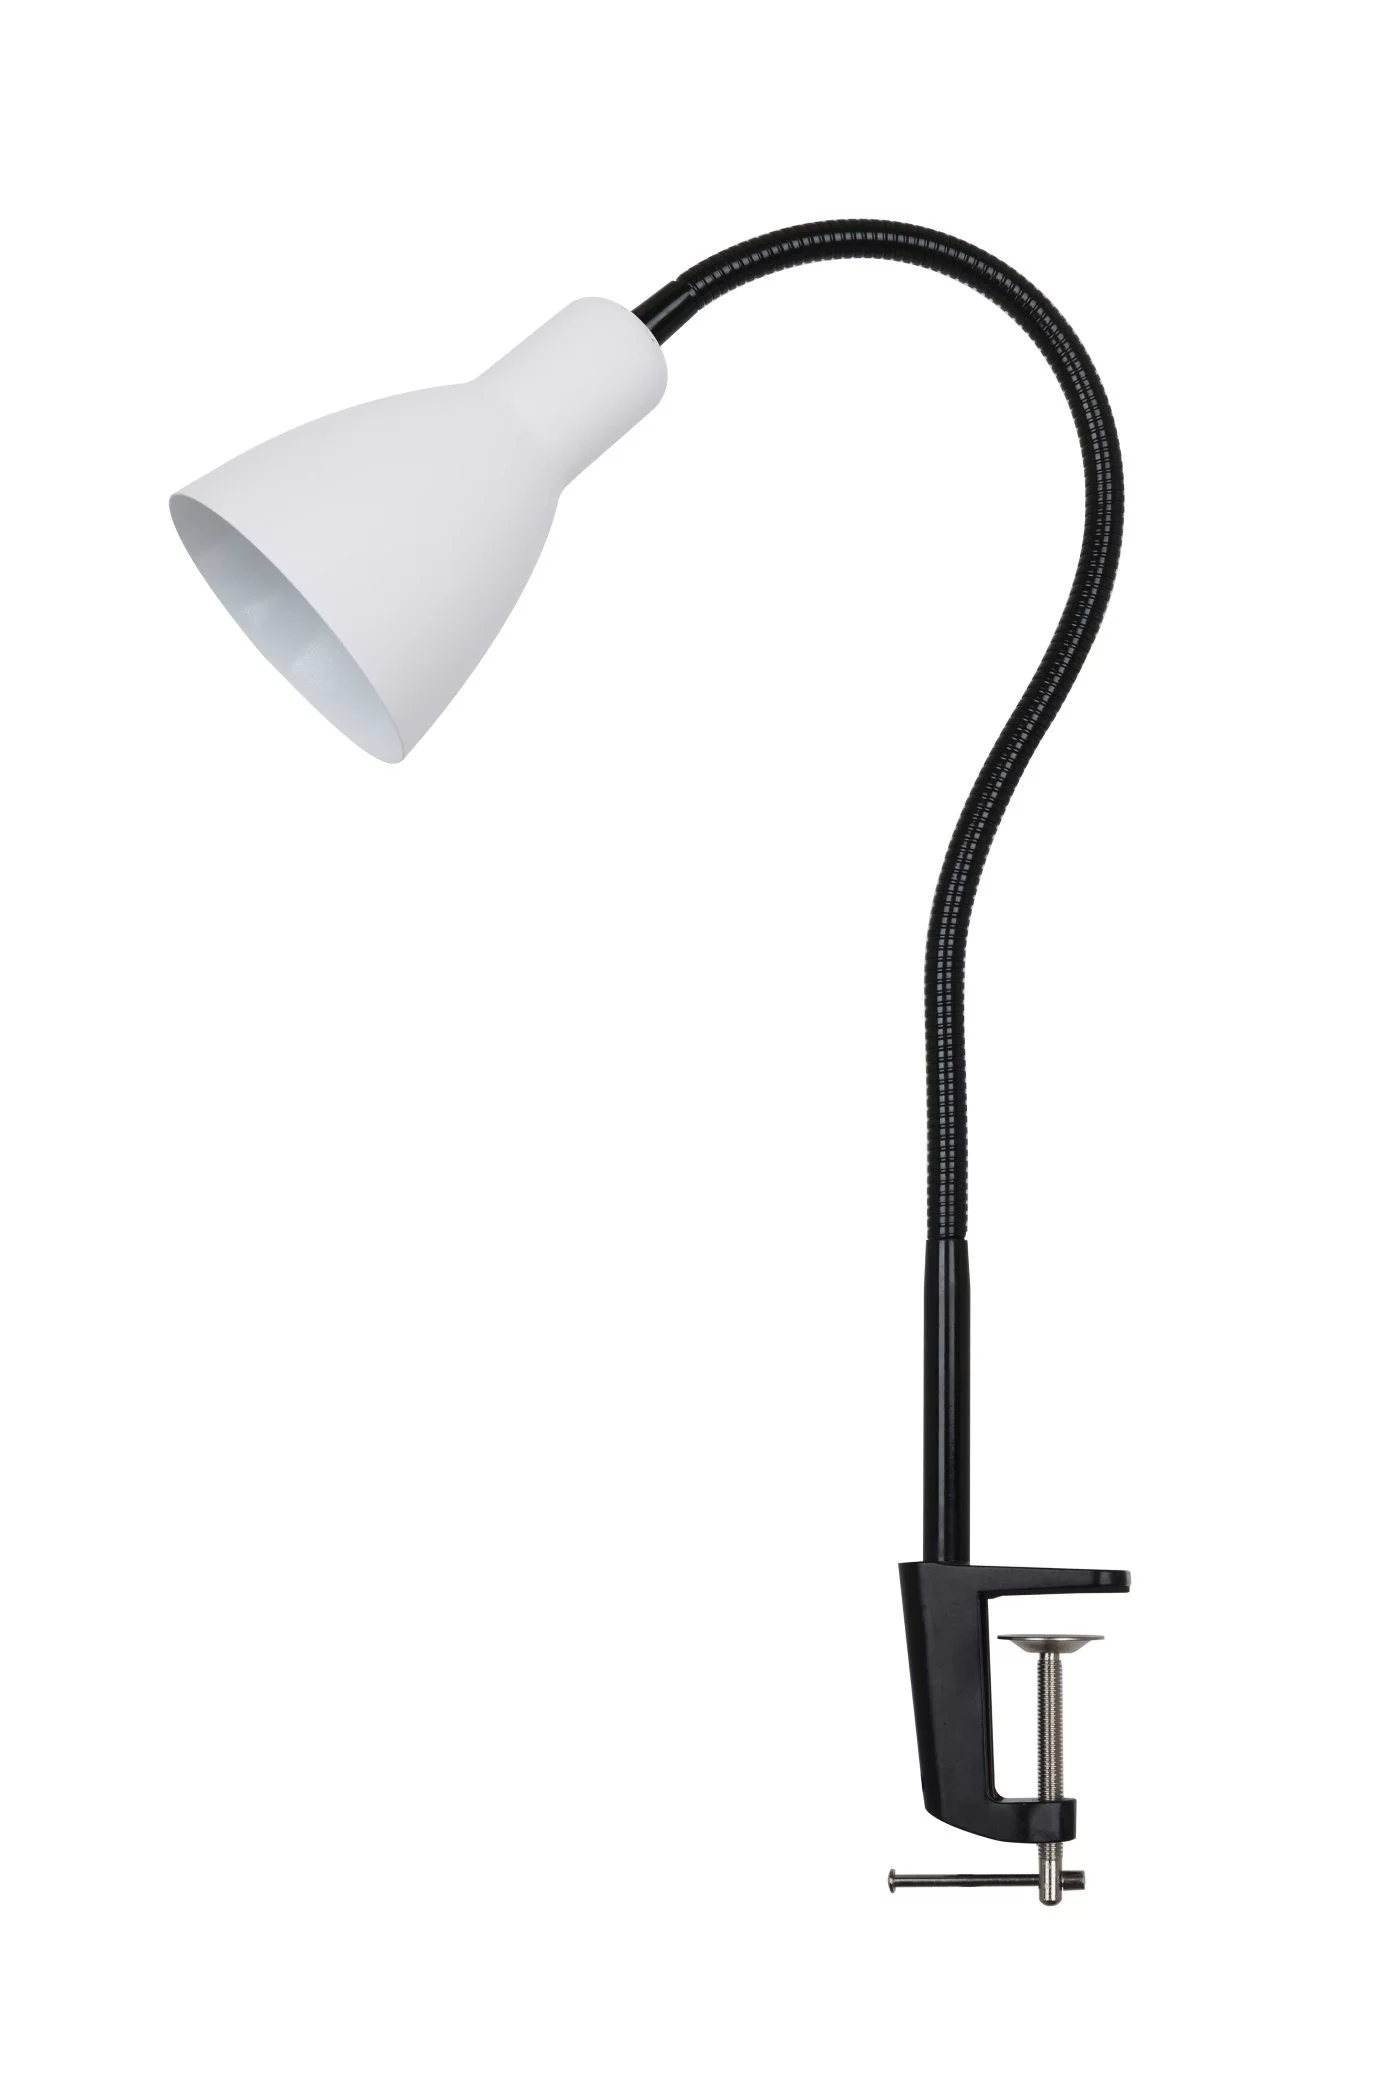   
                        Настільна лампа LAGUNA LIGHTING (Китай) 25627    
                         у стилі скандинавський.  
                        Тип джерела світла: cвітлодіодні led, енергозберігаючі, розжарювання.                                                 Кольори плафонів і підвісок: білий.                         Матеріал: метал.                          фото 1